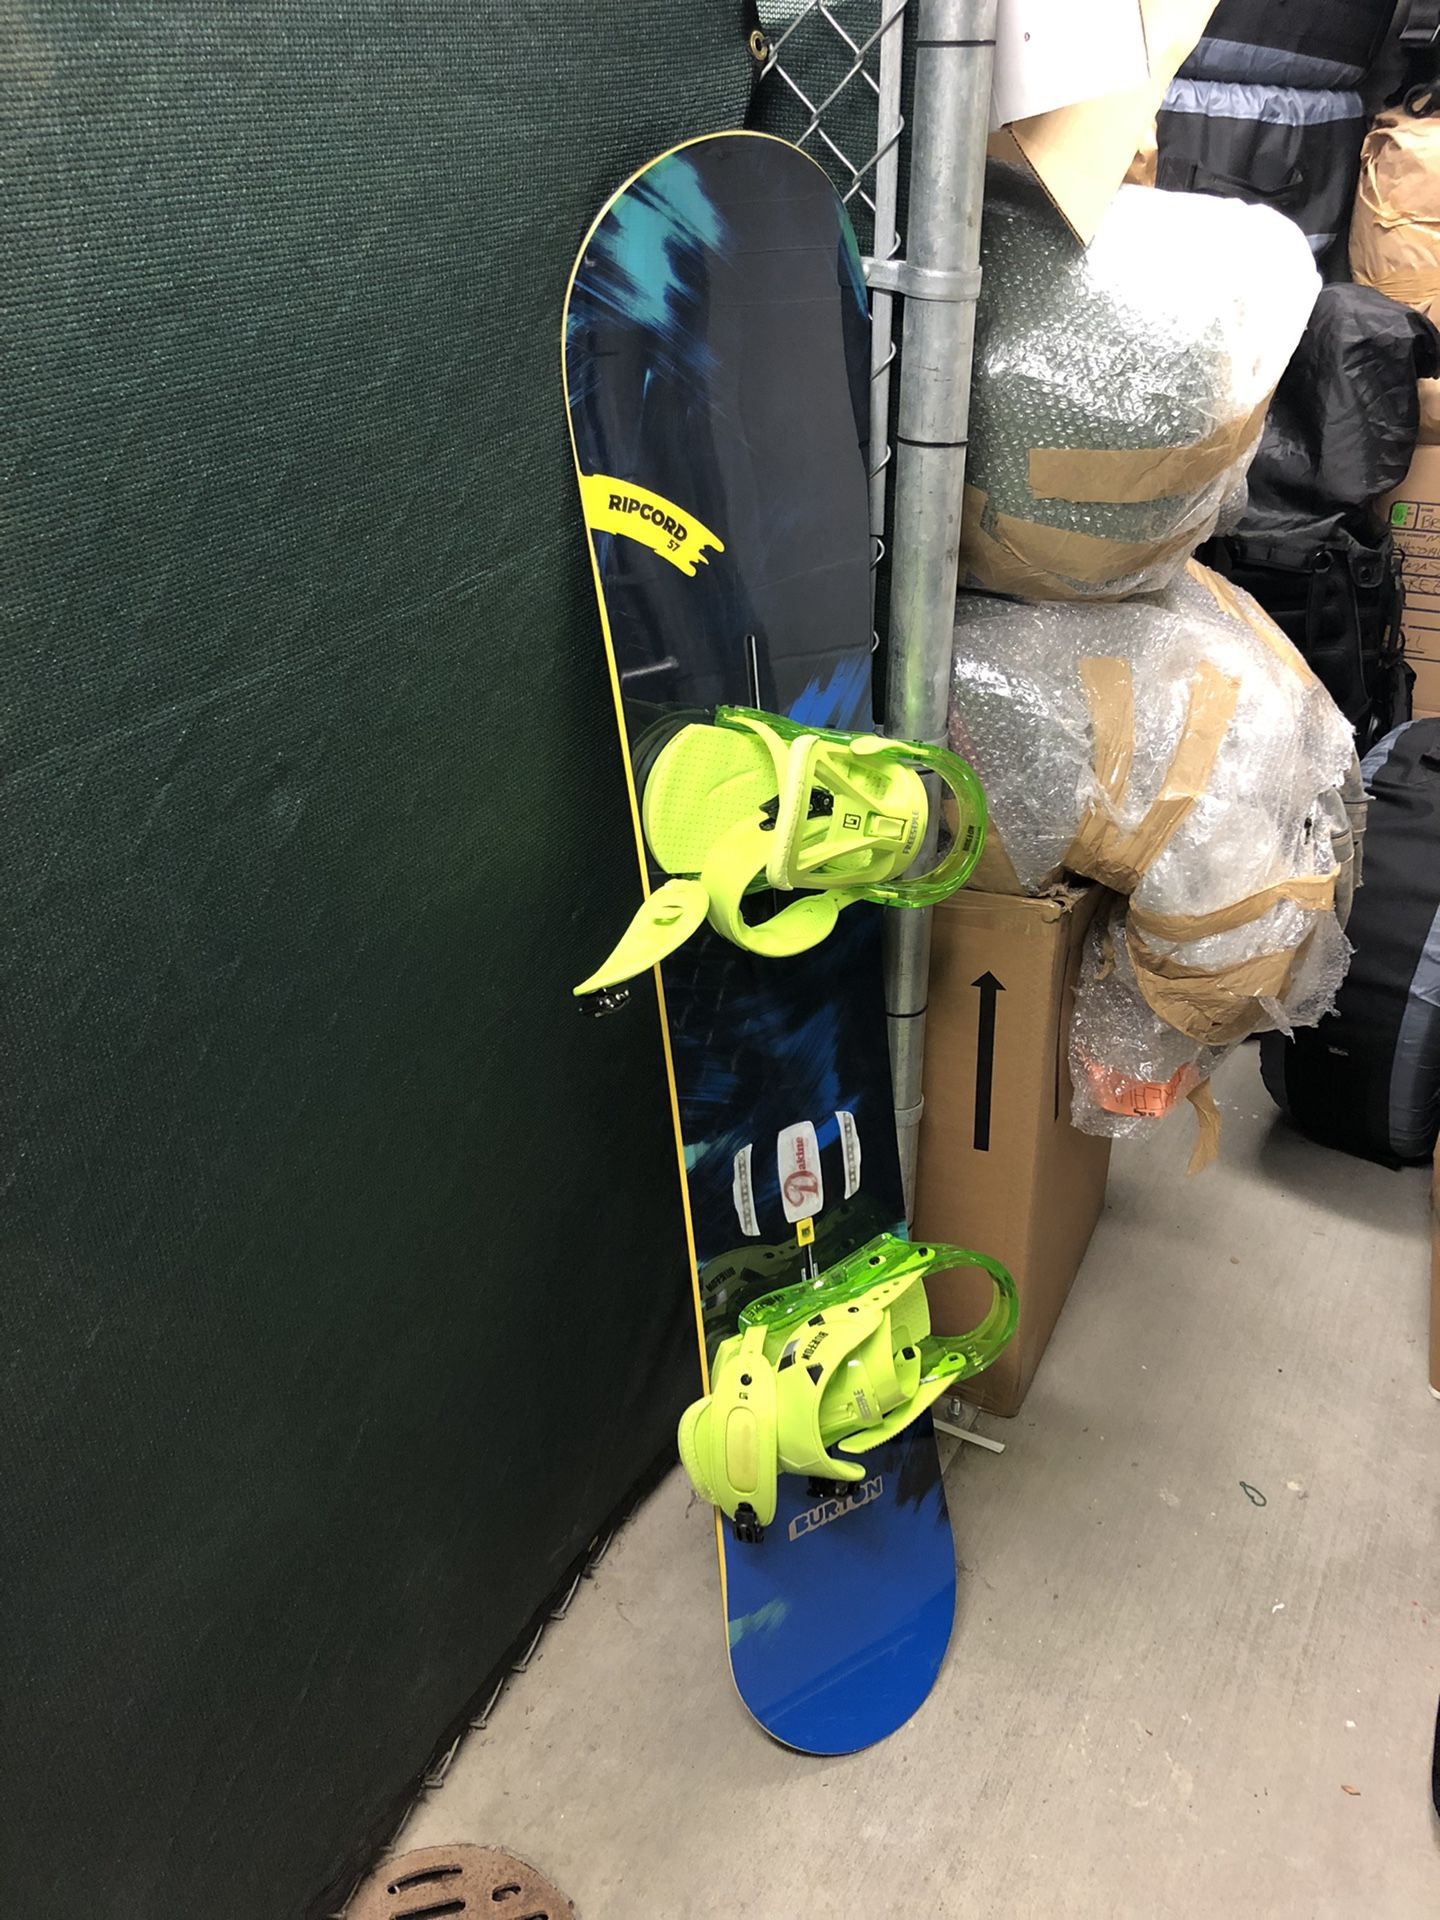 Snowboard, bindings, helmet, and bag